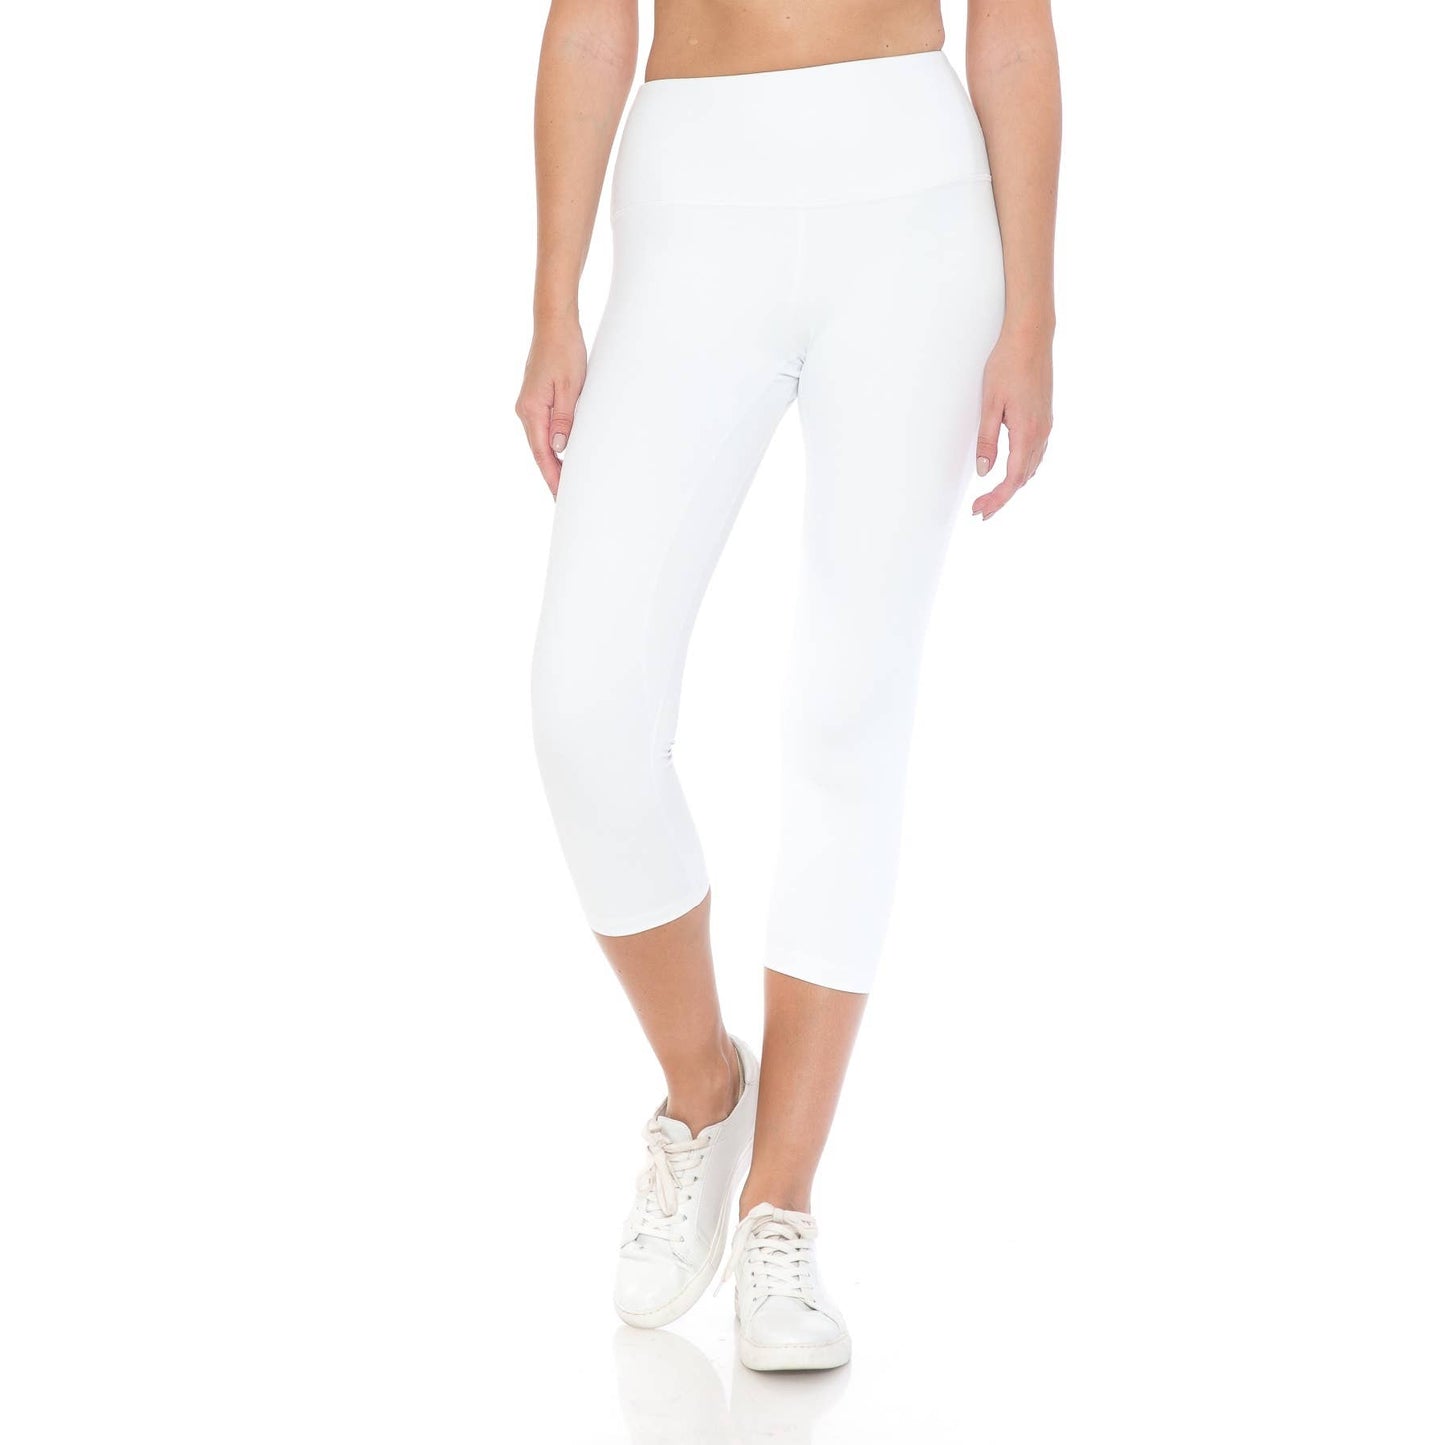 Premium High Waist Activewear Capri Leggings (21" Inseam): White / S